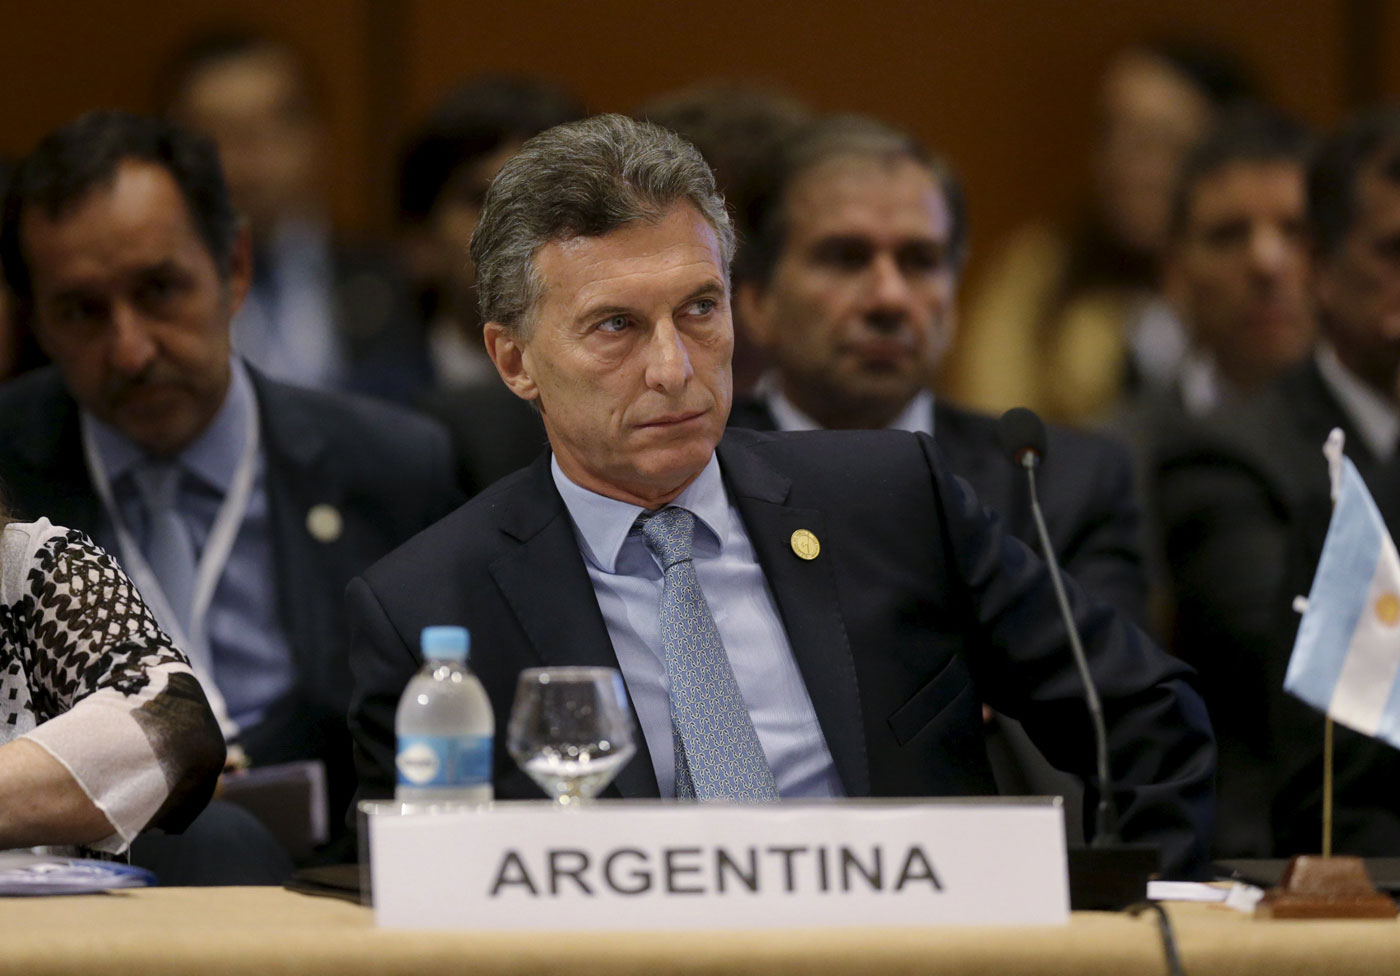 Macri confía en alcanzar un “acuerdo razonable” con fondos especulativos